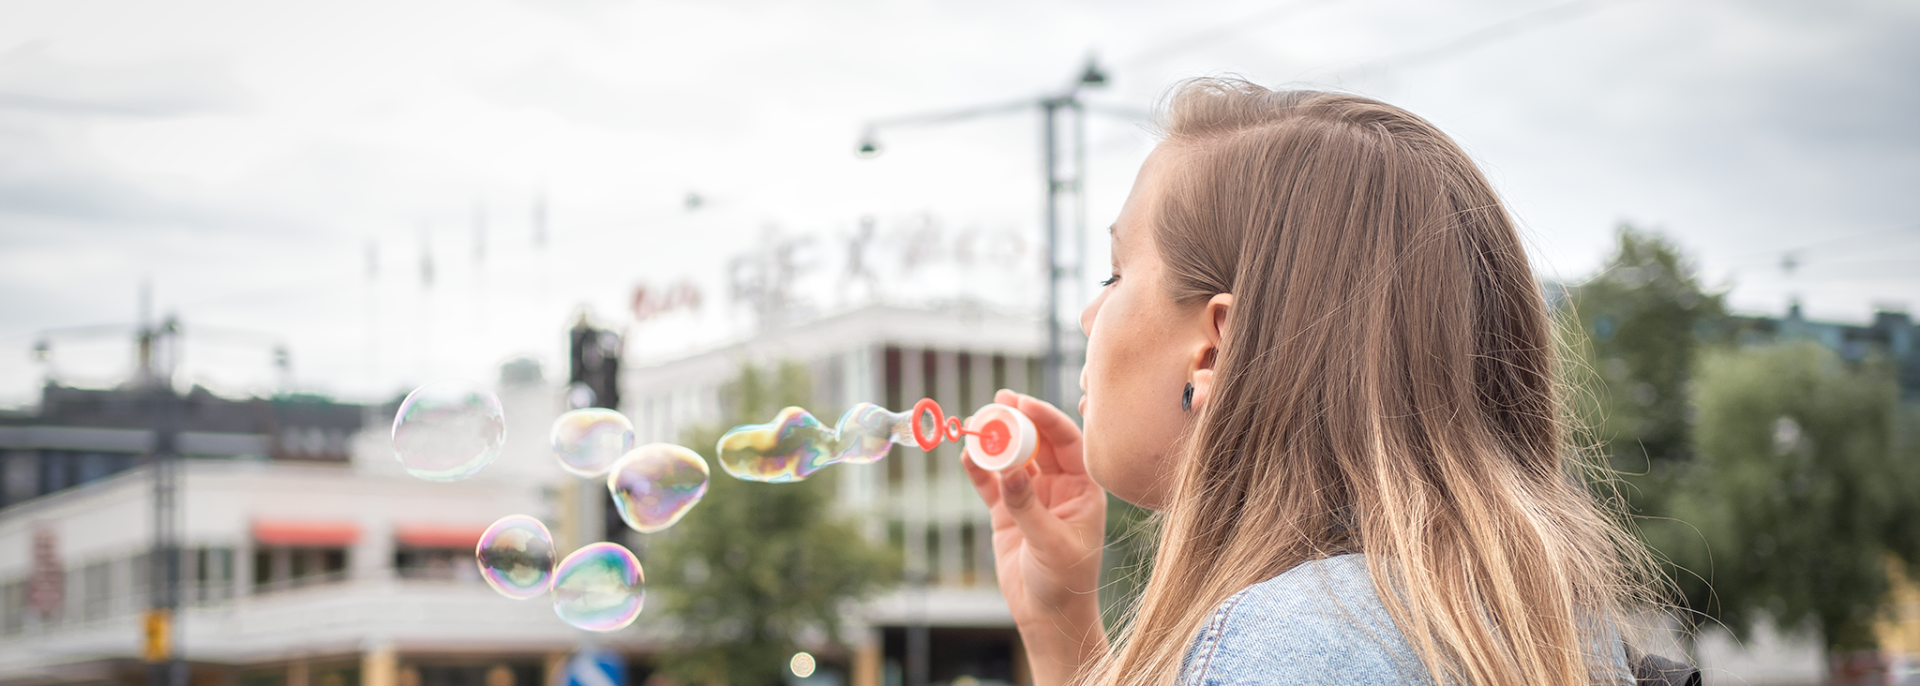 En flicka blåser såpbubblor på en gata.